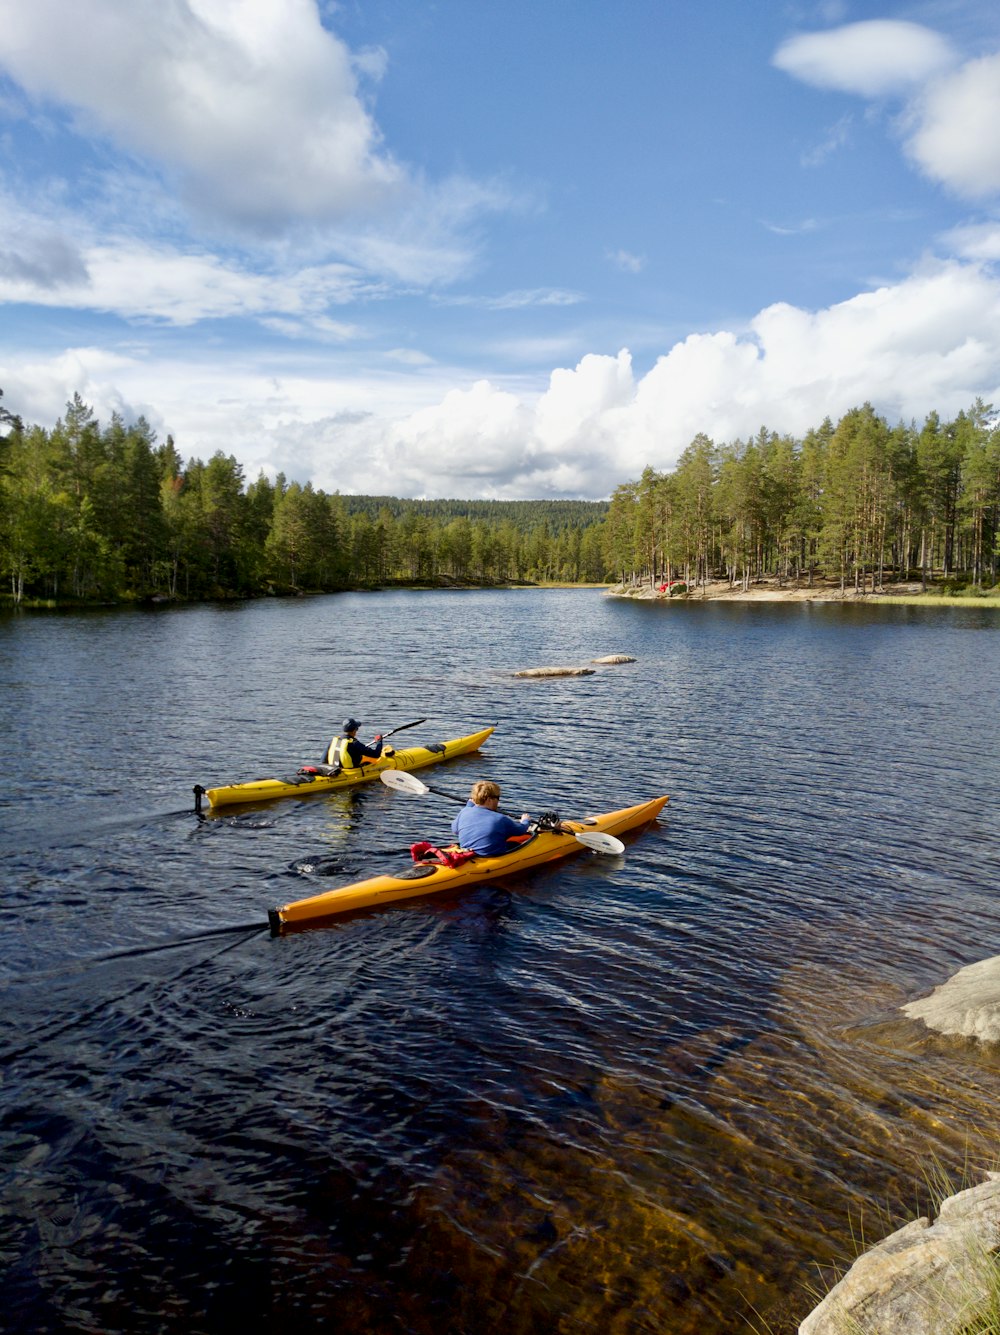 kayak amarillo en el cuerpo de agua cerca de árboles verdes bajo cielo nublado azul y blanco durante